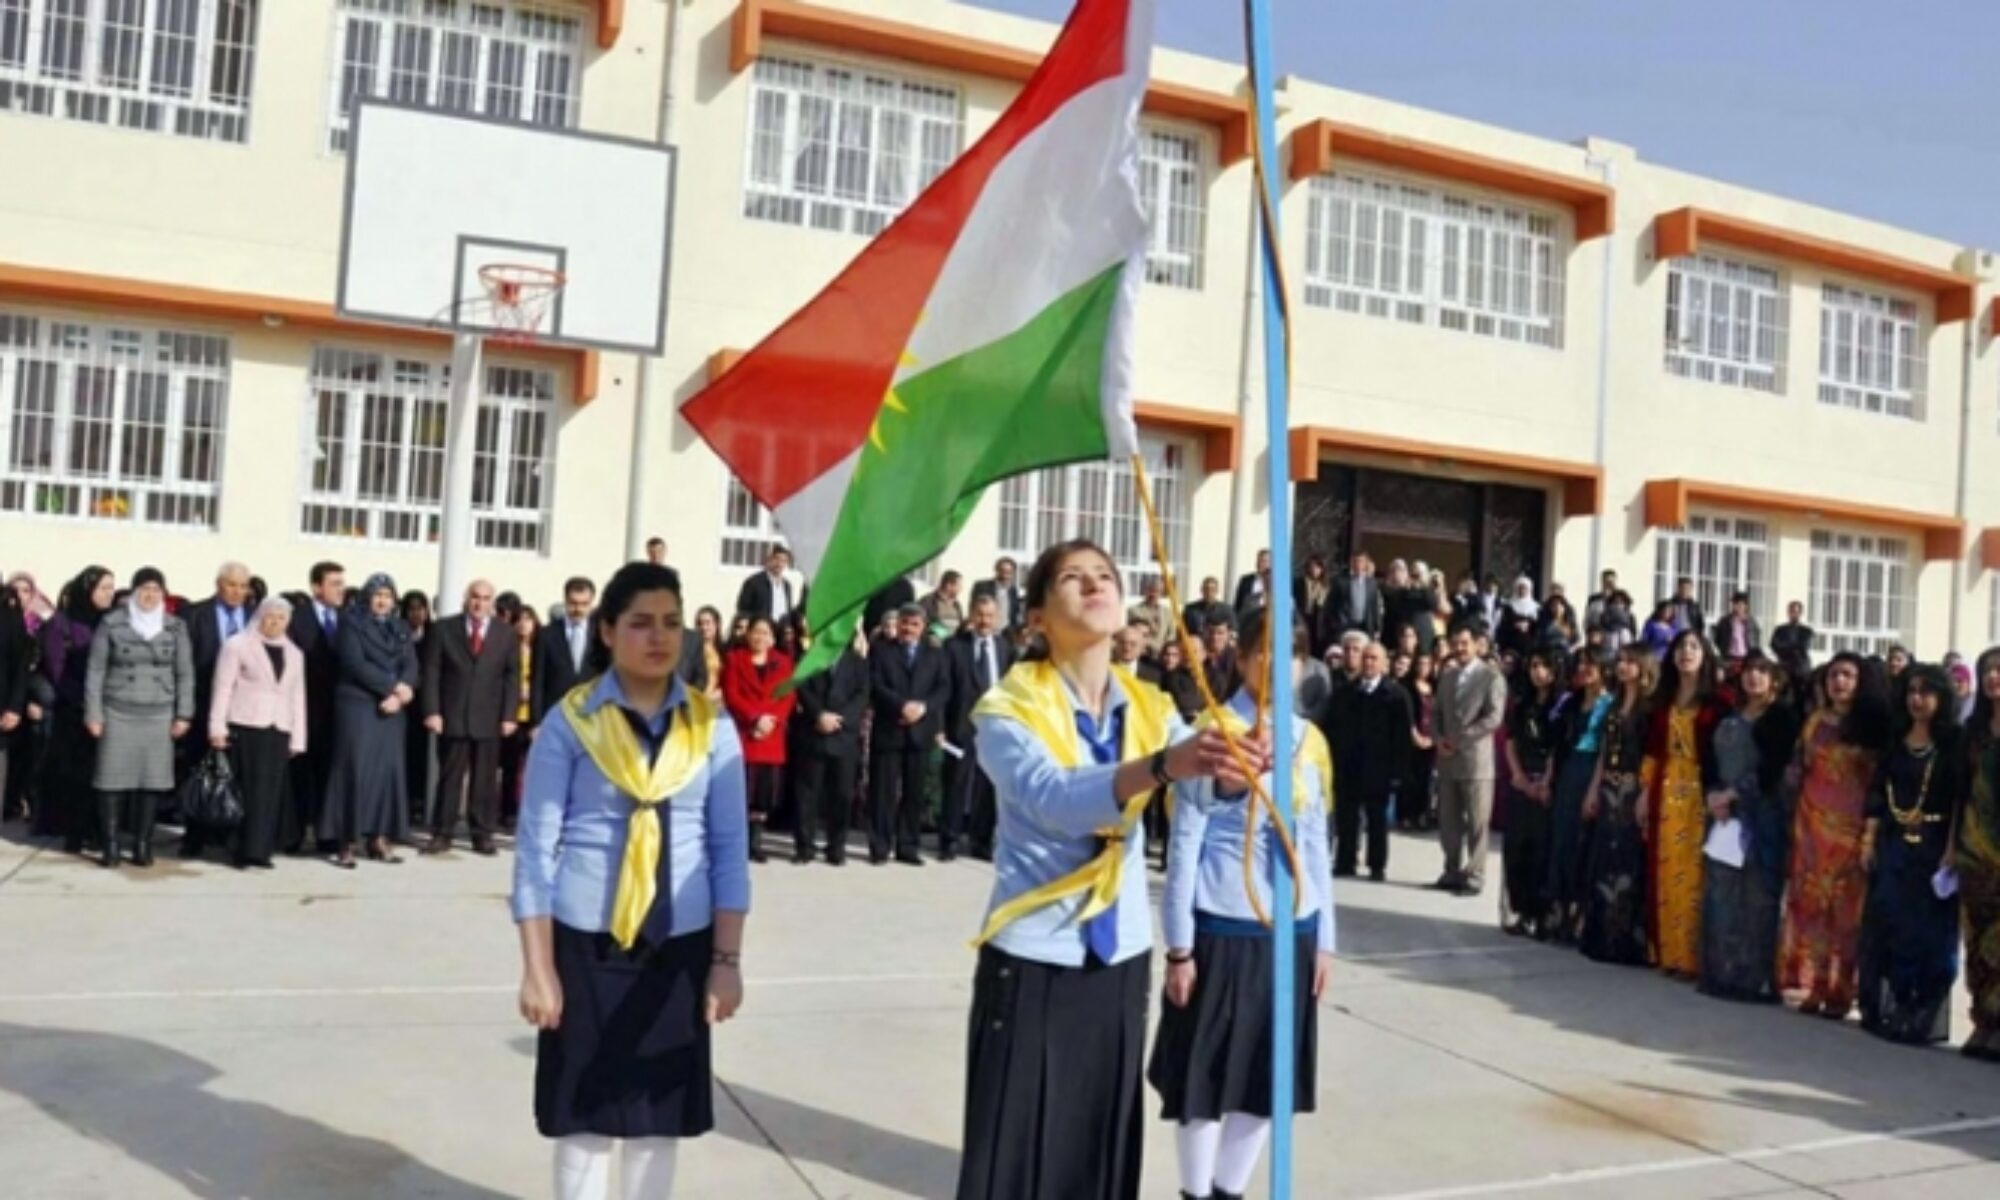 Kerkük’teki bir ilkokul müdürü hakkında Kürdistan bayrağını göndere çekmesinden dolayı gözaltı kararı verildi. Irak genelinde yeni eğitim ve öğretim dönemi pazartesi günü, 1 ay gecikmeli olarak başlarken, Kerkük’teki bir ilkokul müdürü hakkında Kürdistan bayrağını taşınmasından ötürü gözaltı kararı verildi. K24'teki habere göre, Kerkük’teki Ali Merdan İlkokulu’ndaki yeni eğitim döneminin başlangıç töreninde Kürdistan bayrağının taşınım Ey Reqib Marşı’nın okunduğunu bildirdi. Törenin ardından Kerkük Eğitim Müdürü’nün söz konusu okulun müdürünün cezalandırılmasını istediği ve eğitim divanına gelmesini talep ettiği belirtildi. Kürt okul müdürü Arap olan Kerkük Eğitim Müdürü’nün talebini reddederken, güvenlik güçleri okul müdürünün evine baskın düzenledi.